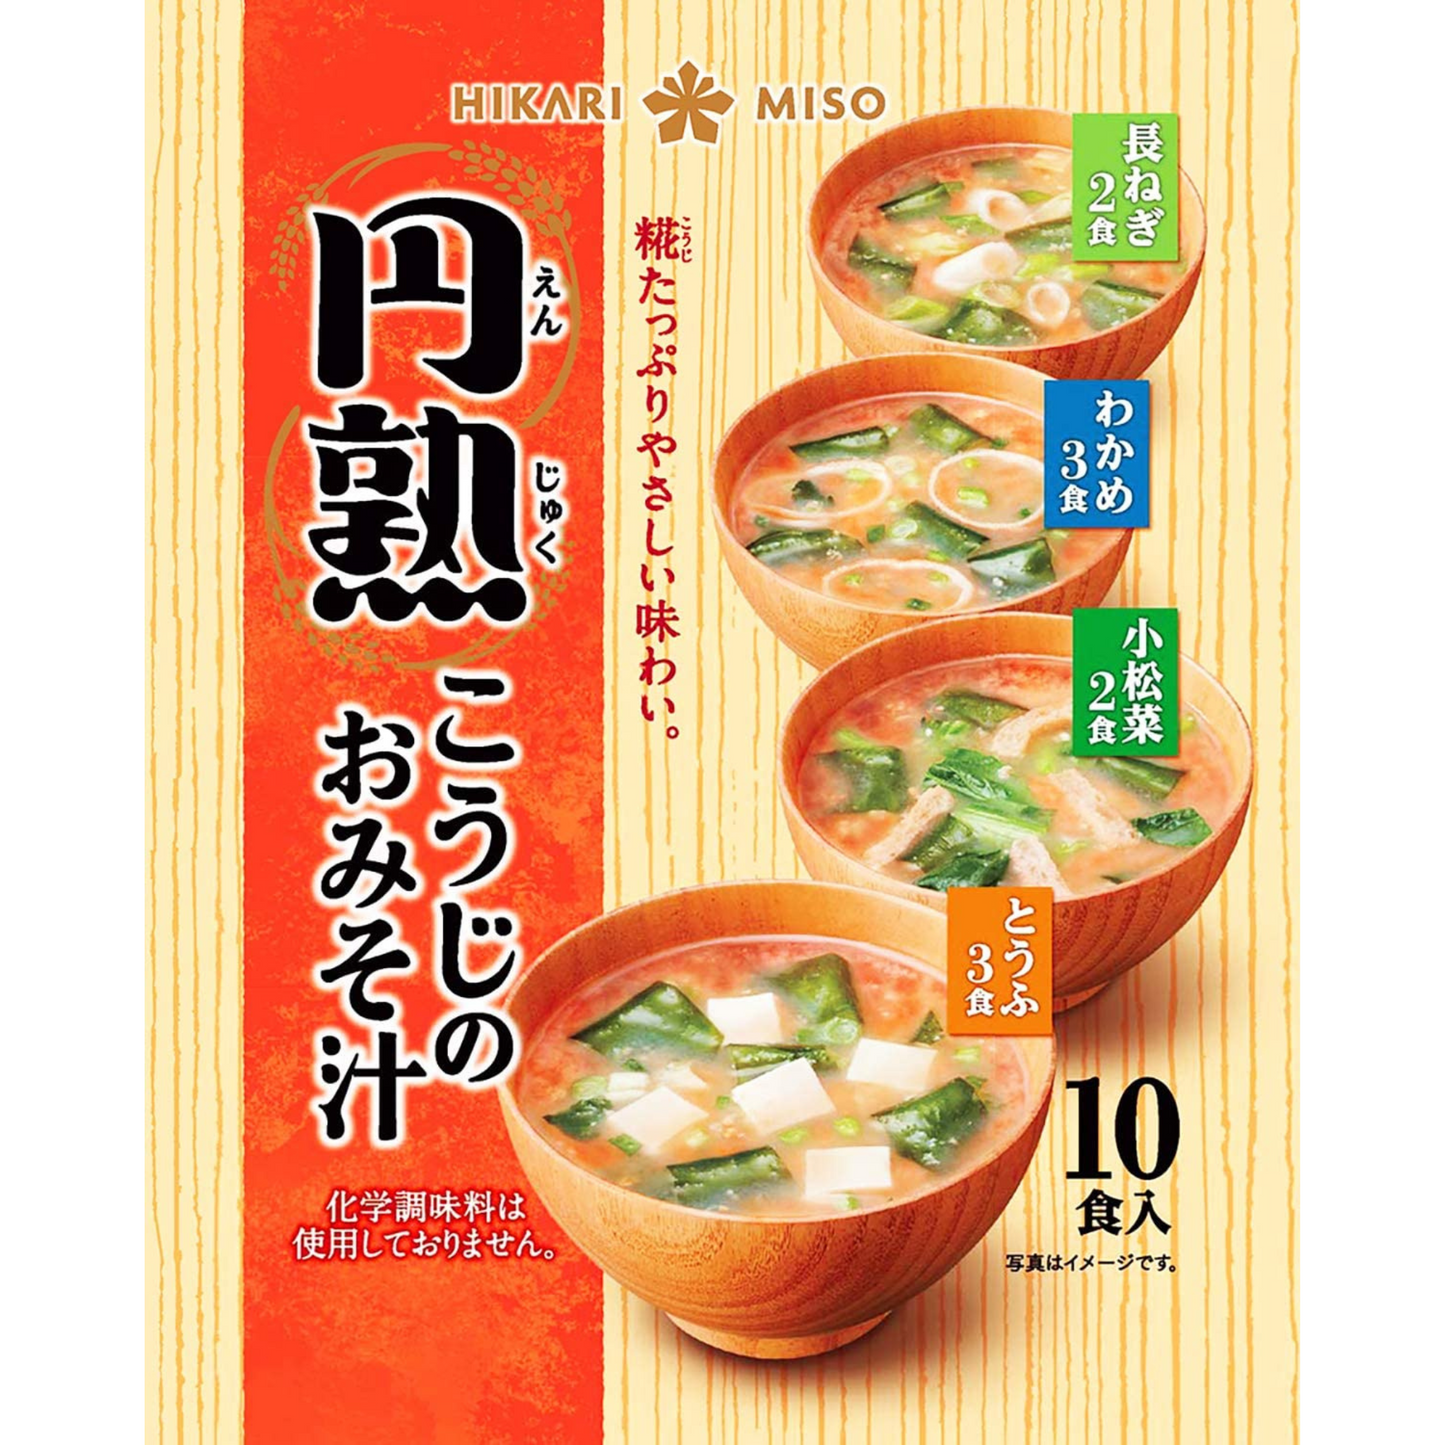 Assortiment de soupes miso instantanées (10 portions)